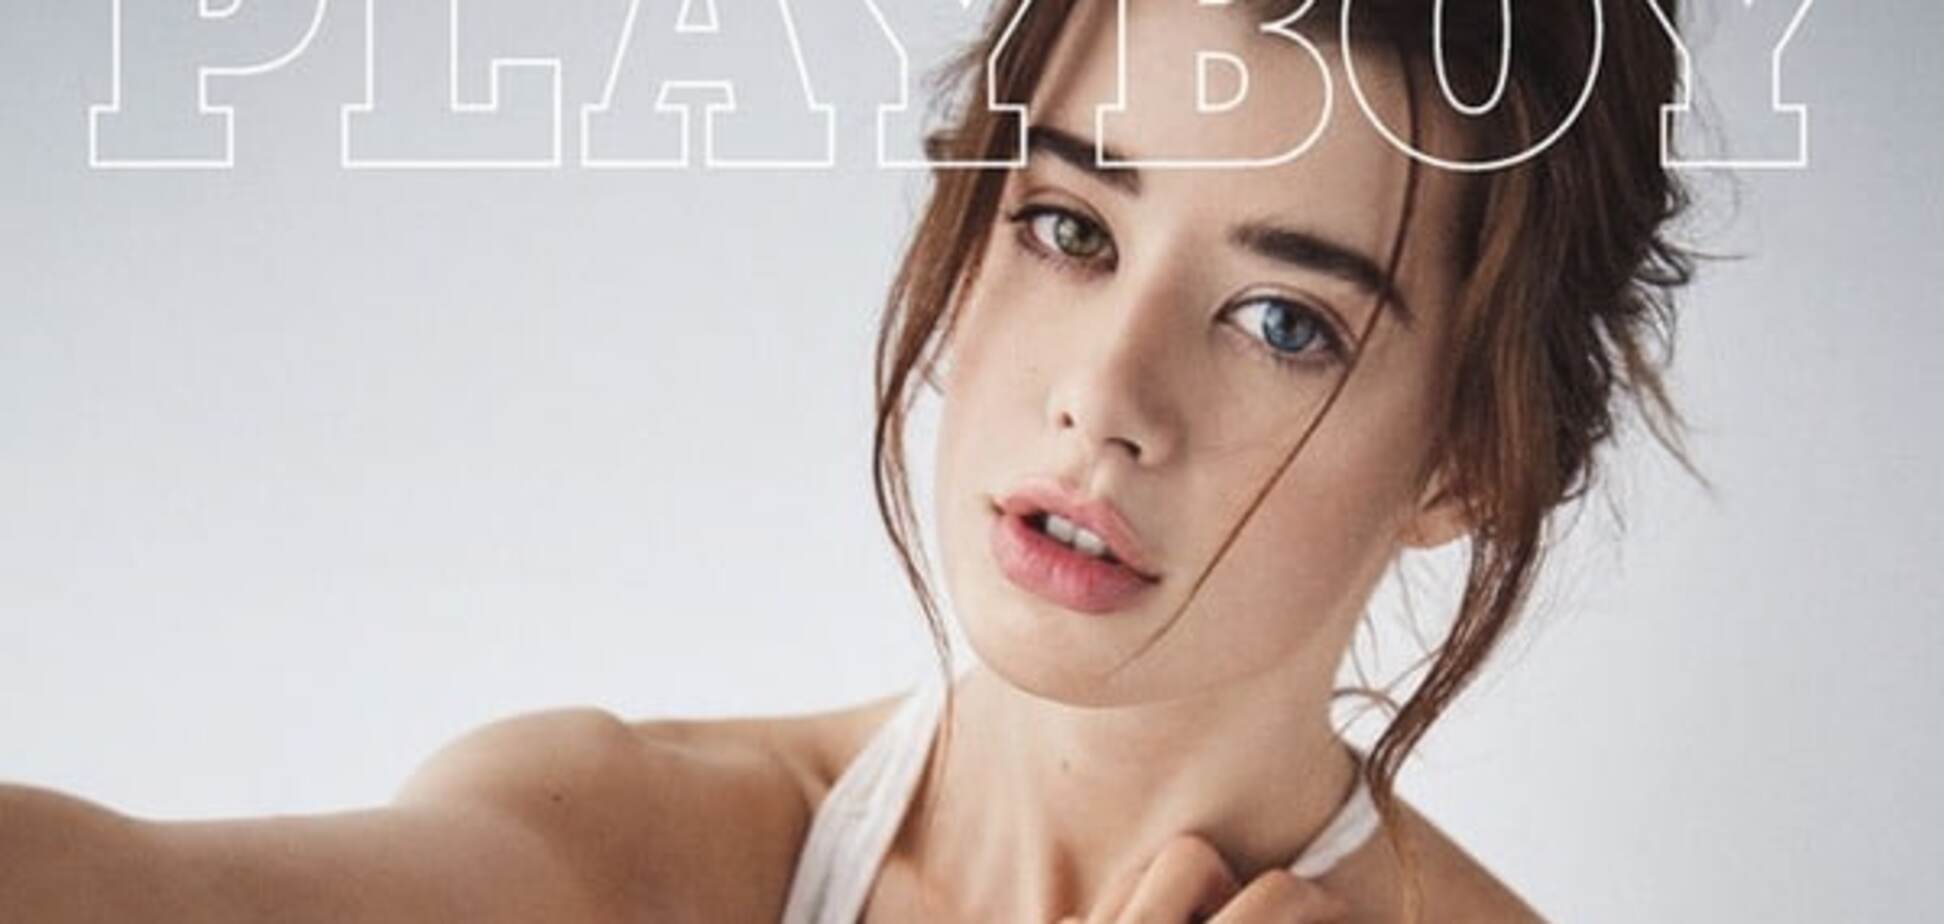 Playboy выпустил обложку с девушкой с разными глазами